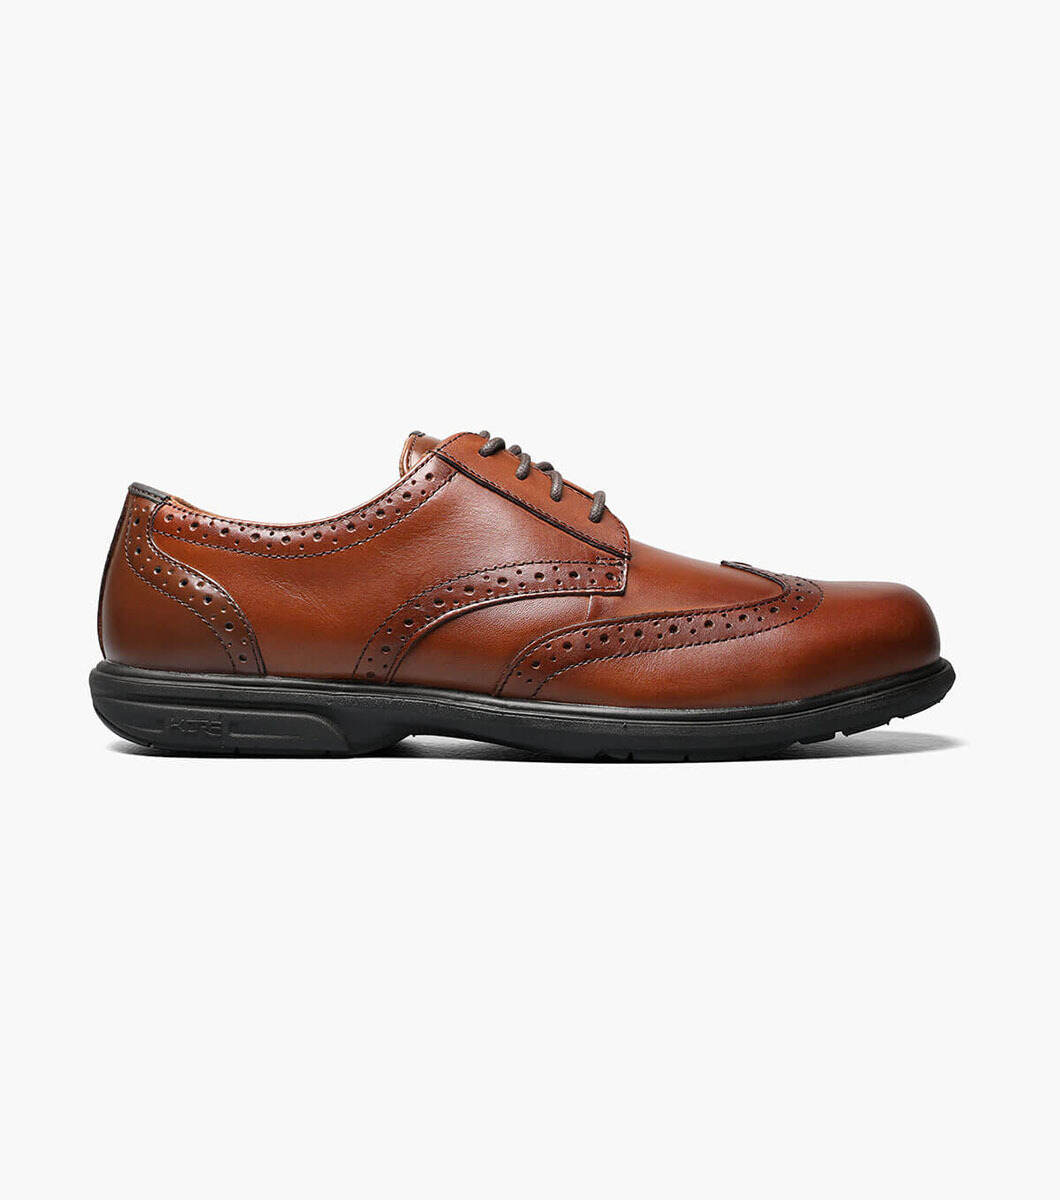 Florshiem FS2430 Men's Polaris Composite Toe Eurocasual Oxford Work Shoes 